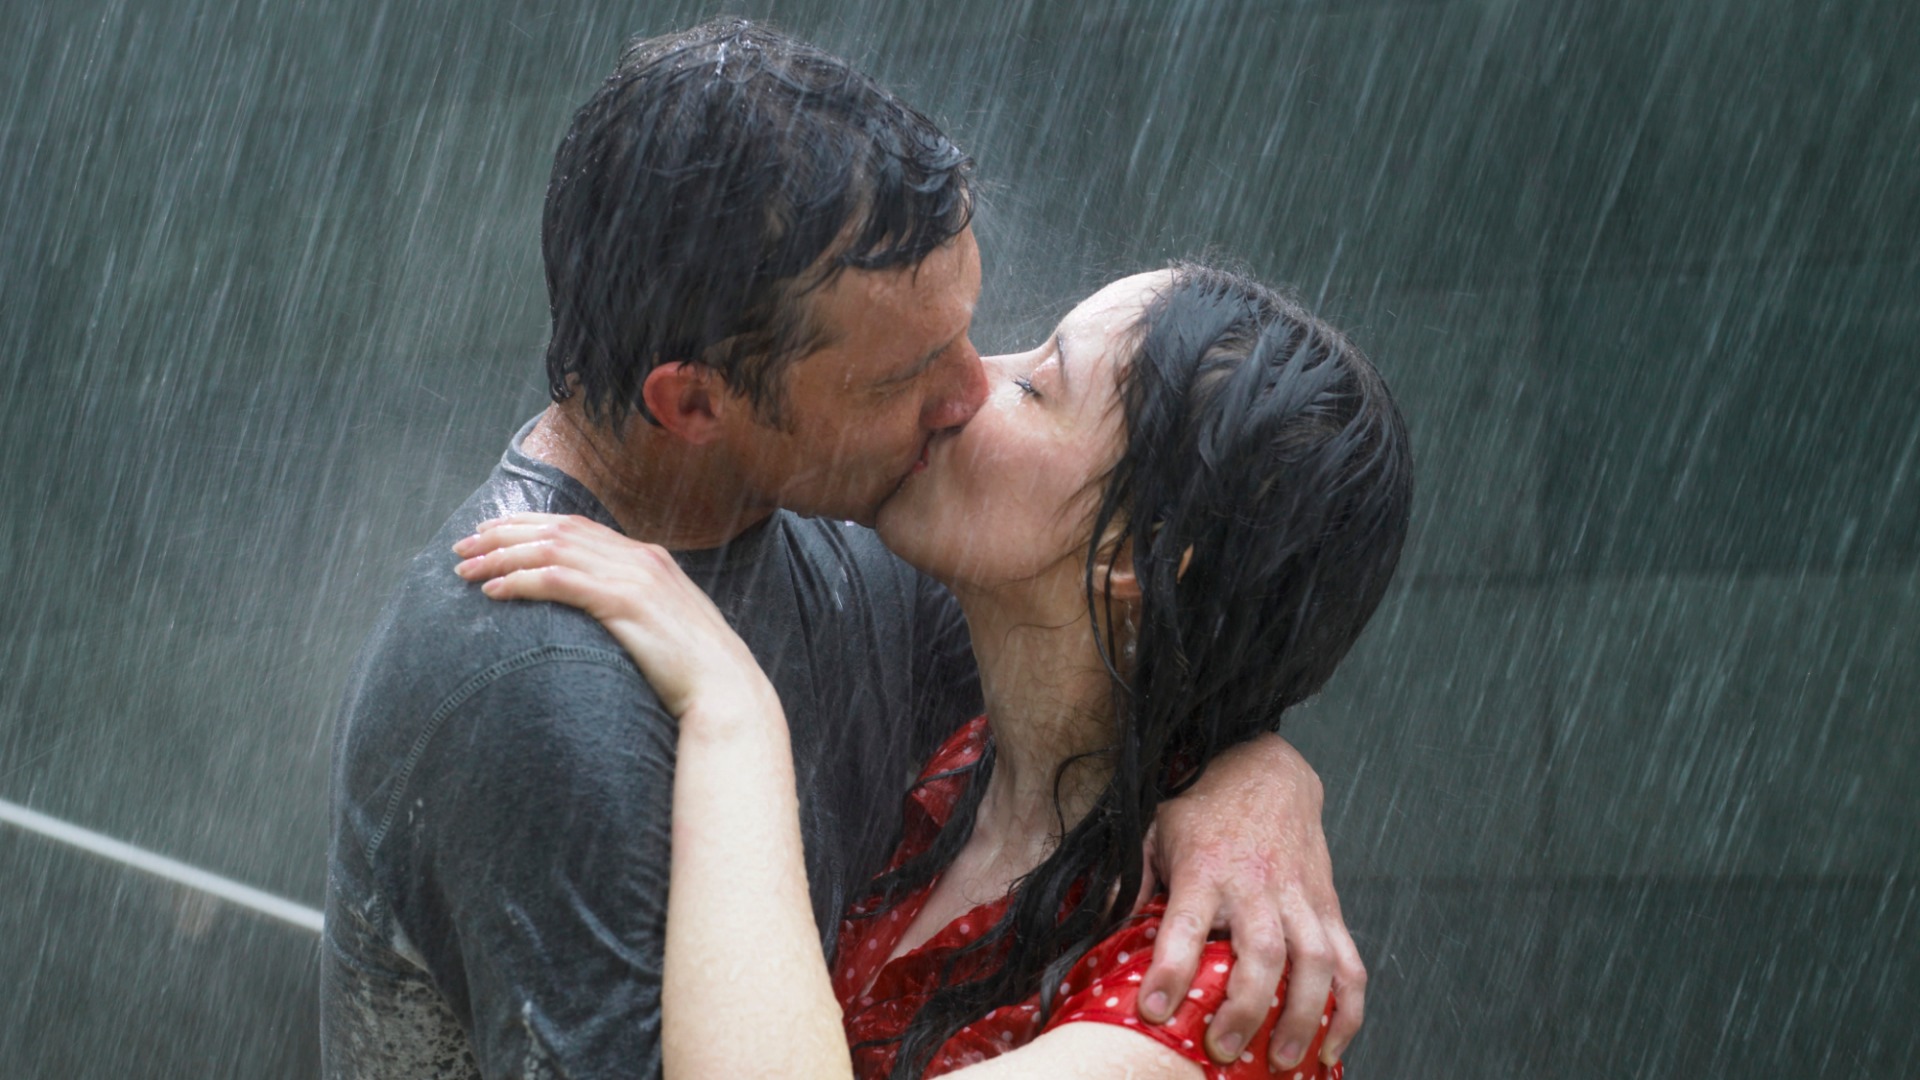 http://cdn.sheknows.com/articles/2014/07/kissing_day.jpg